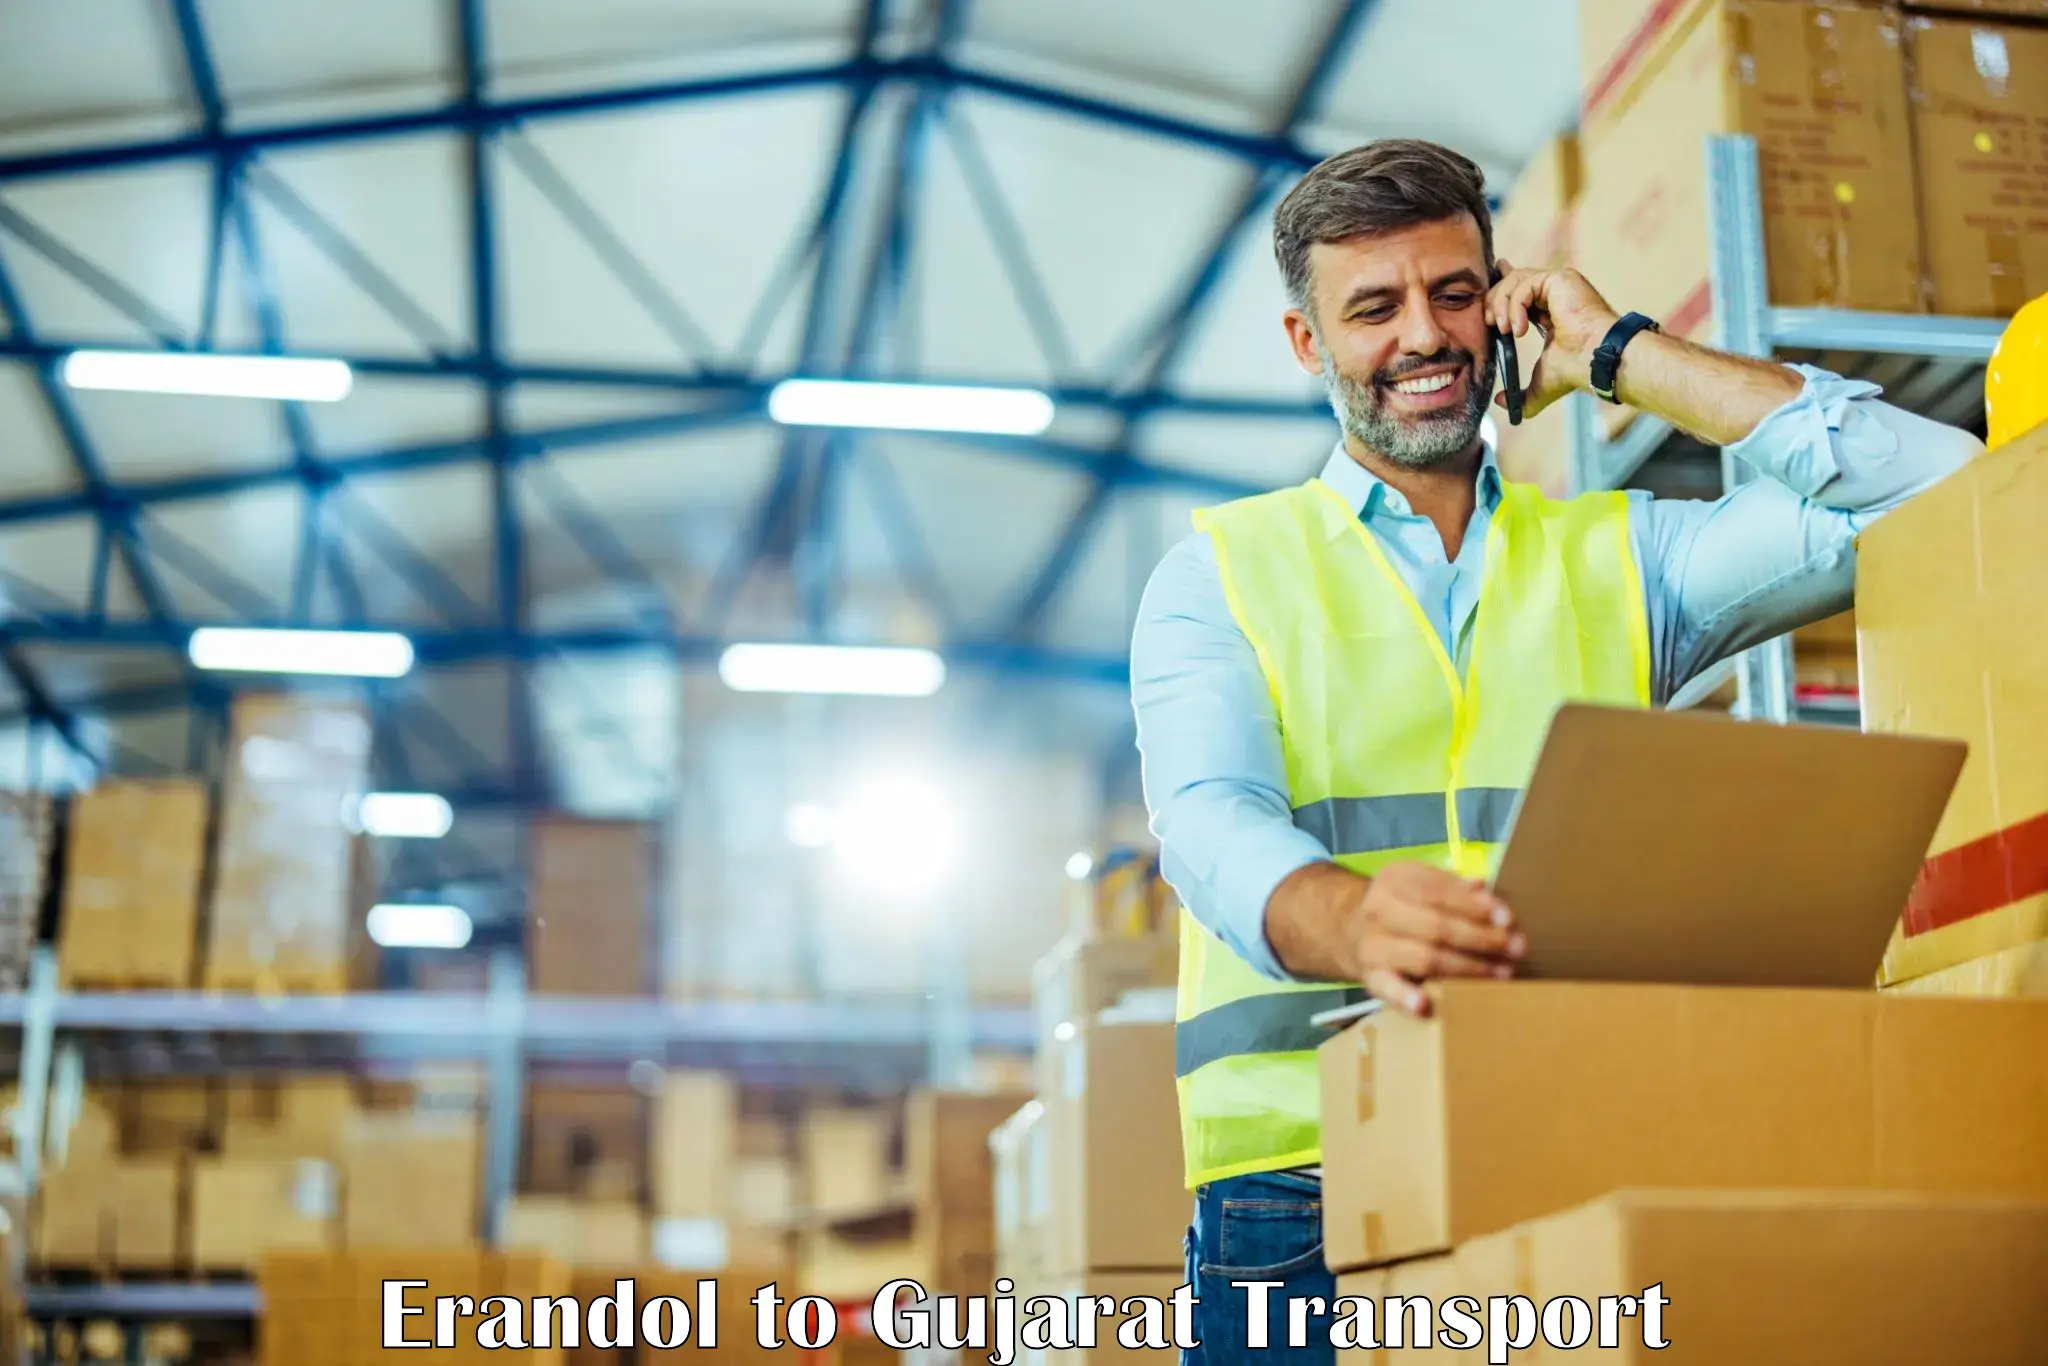 Container transport service Erandol to Harij